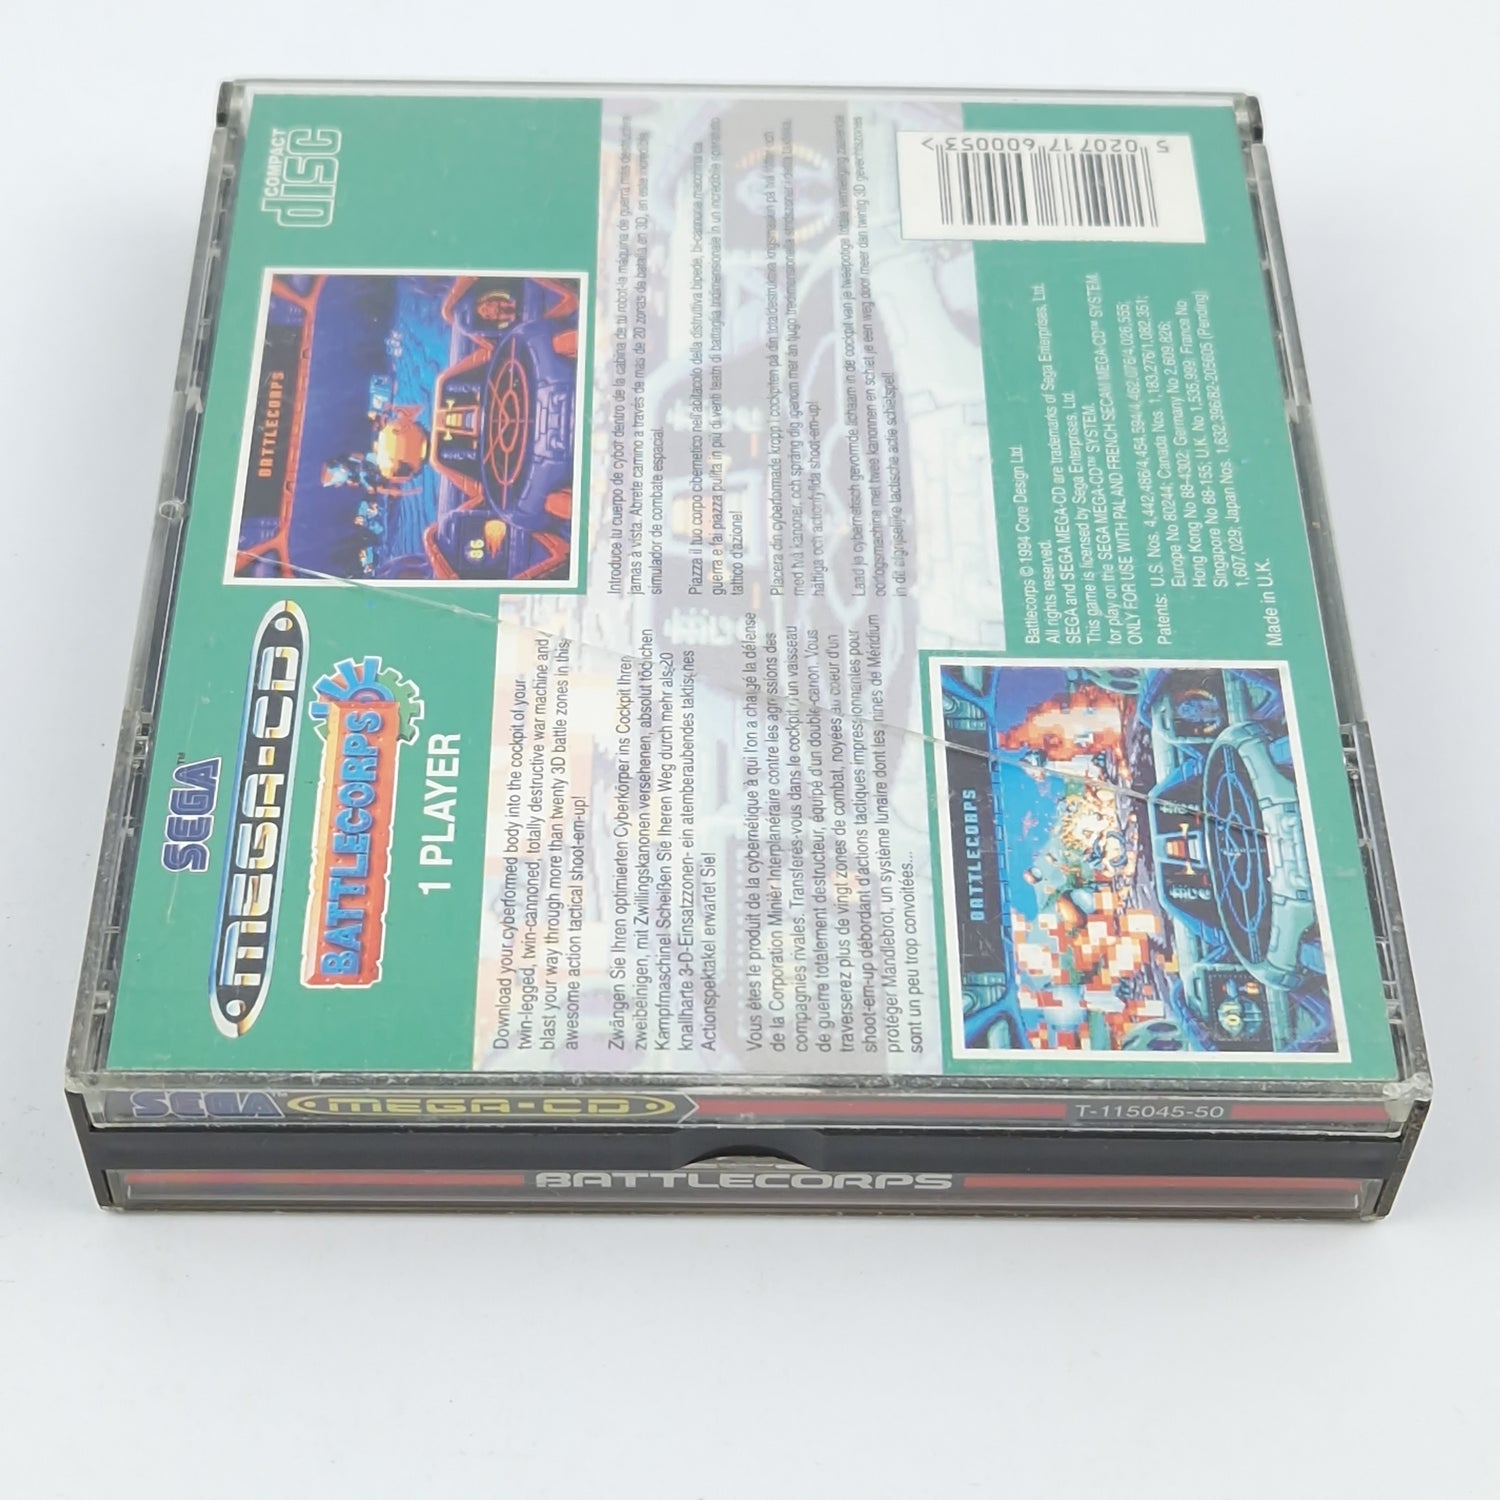 Sega Mega CD Spiel : Battlecorps - CD Anleitung OVP / MCD Disk PAL Game